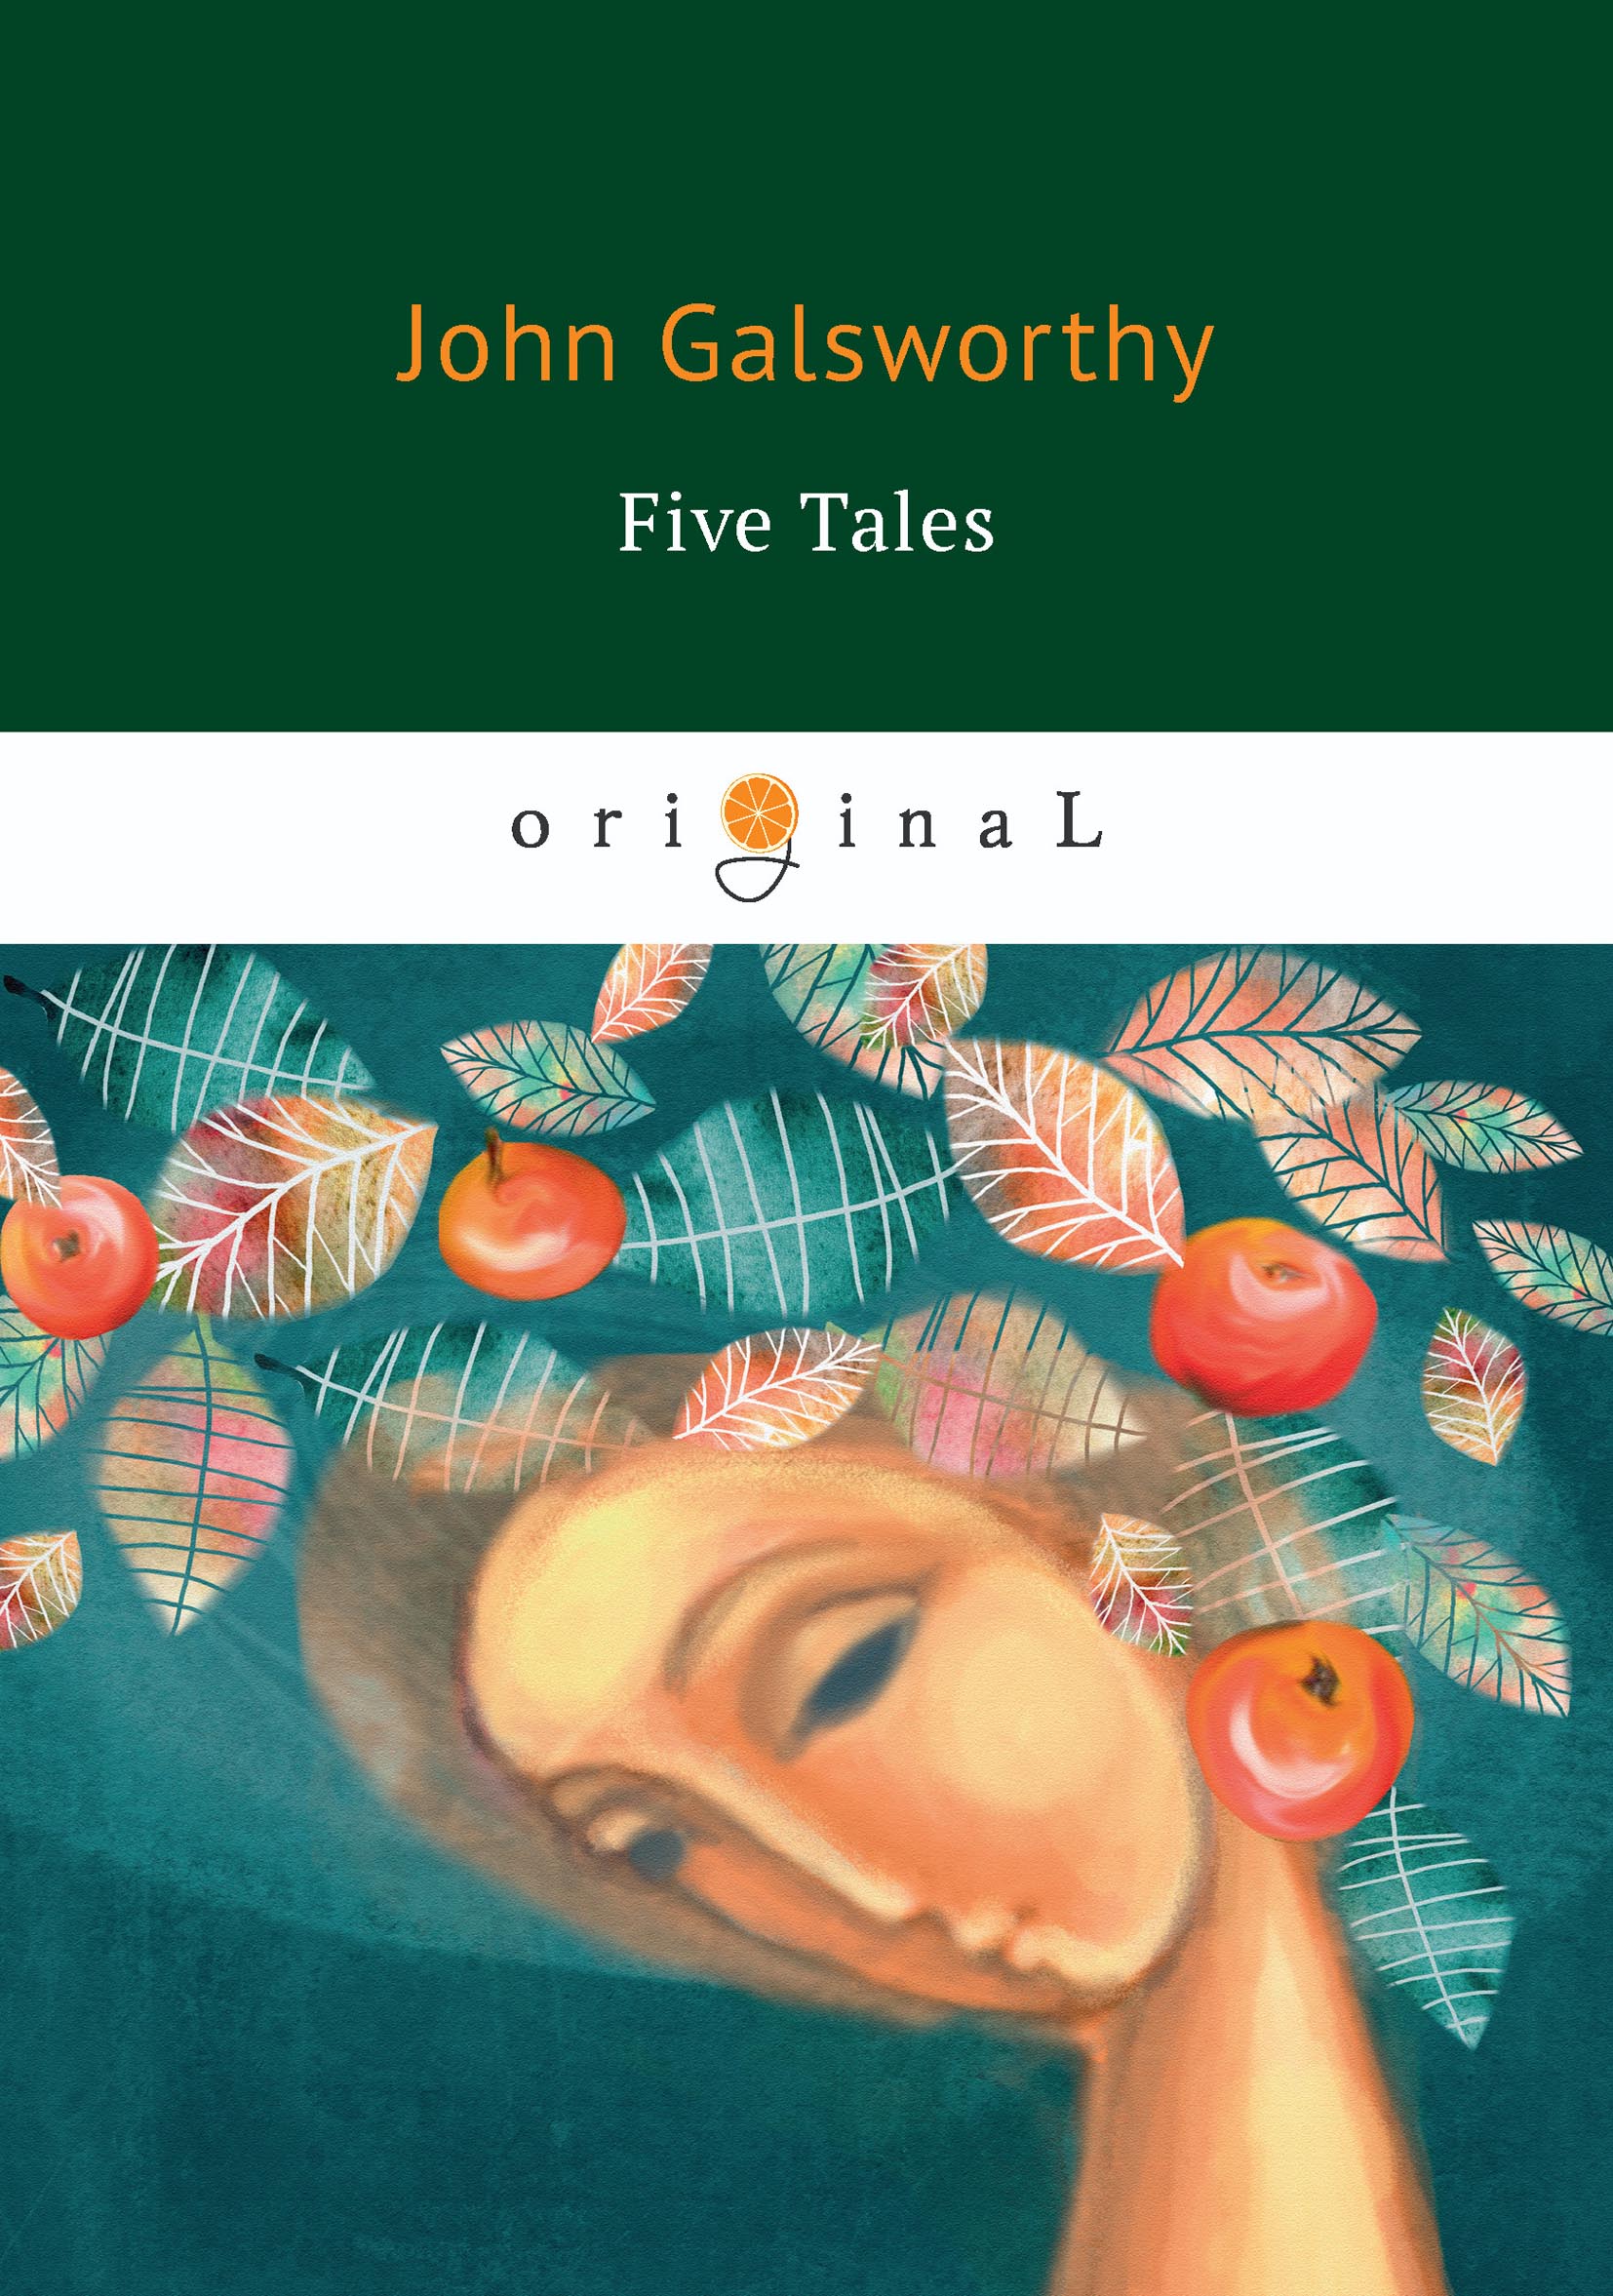 Five Tales. John Galsworthy